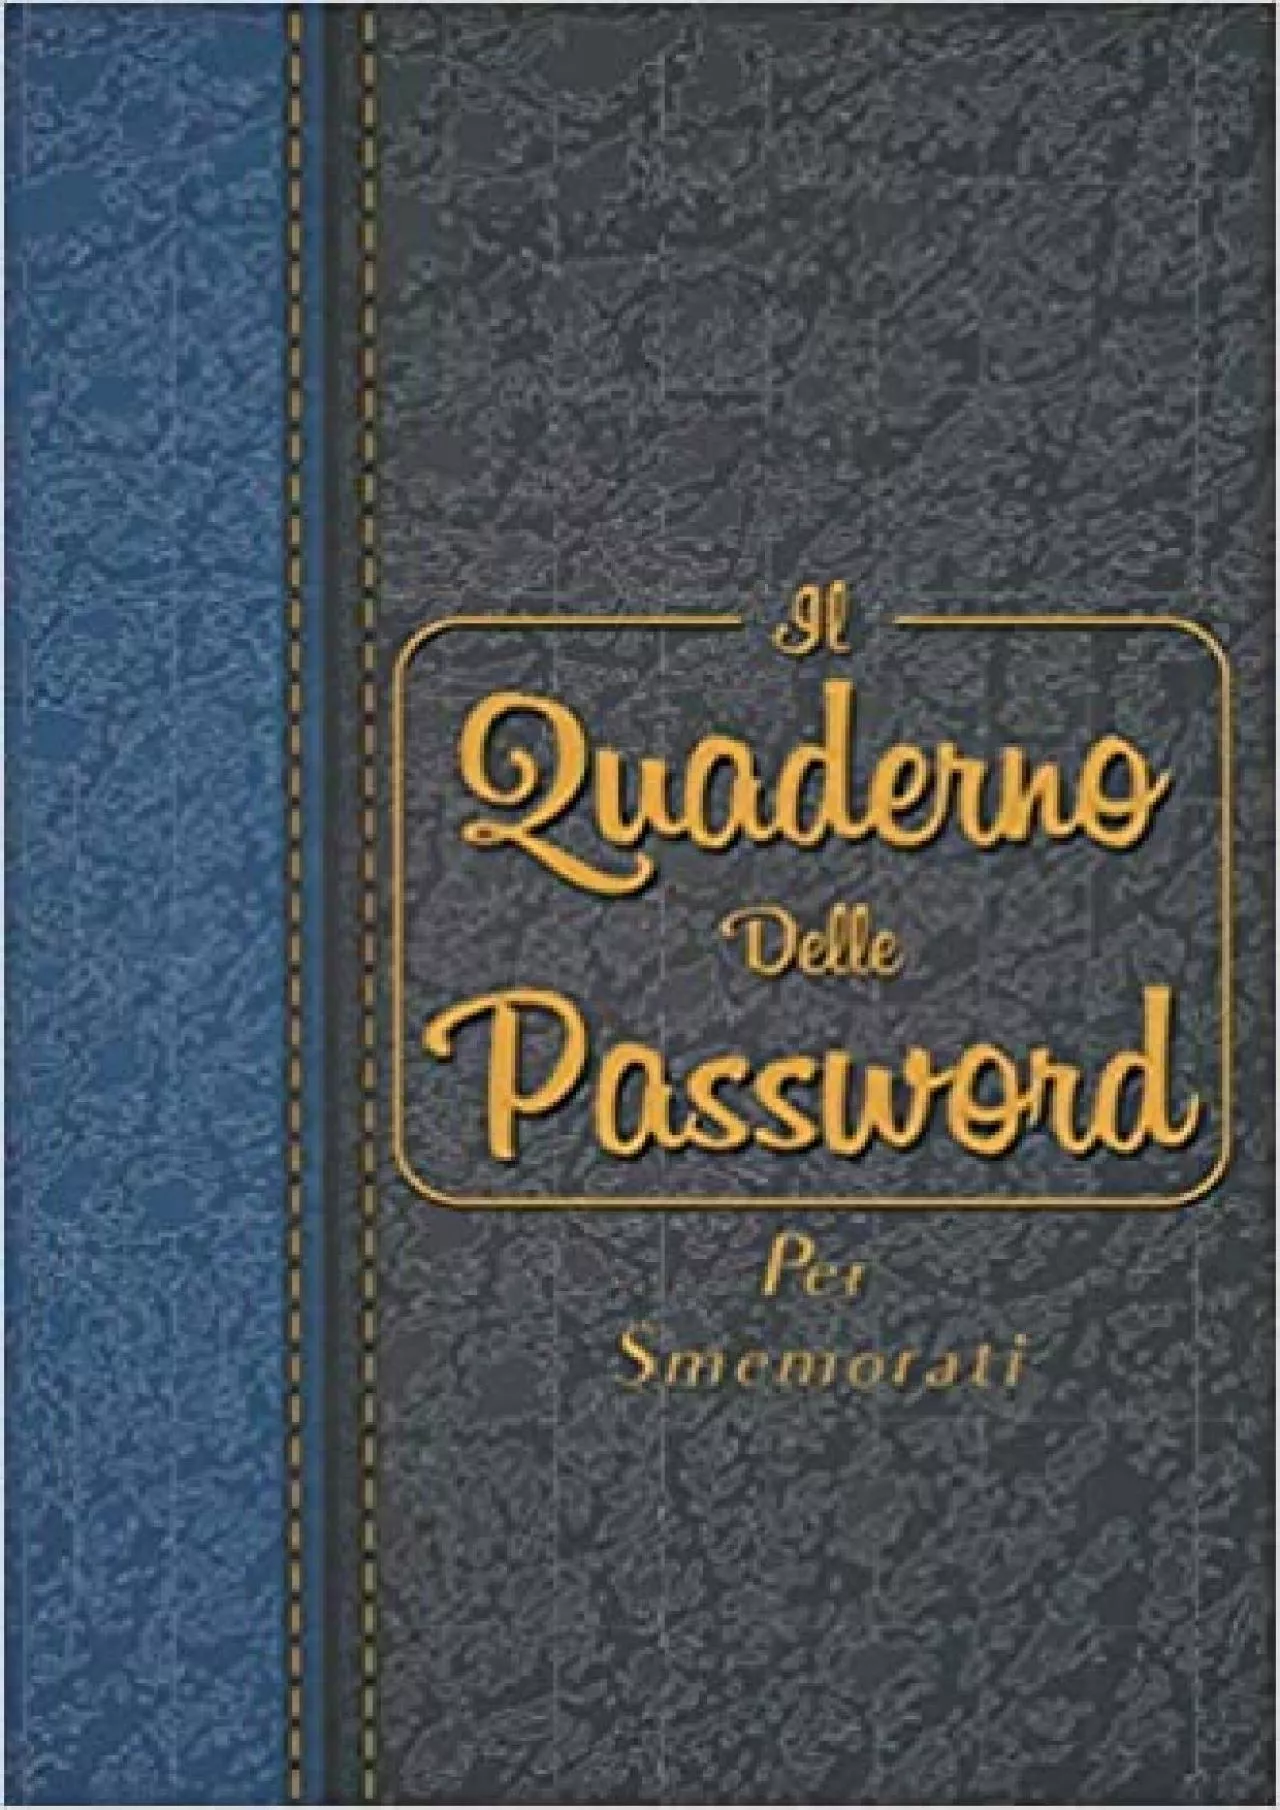 (EBOOK)-Il Quaderno Delle Password Per Smemorati Per conservare tutte le tue password